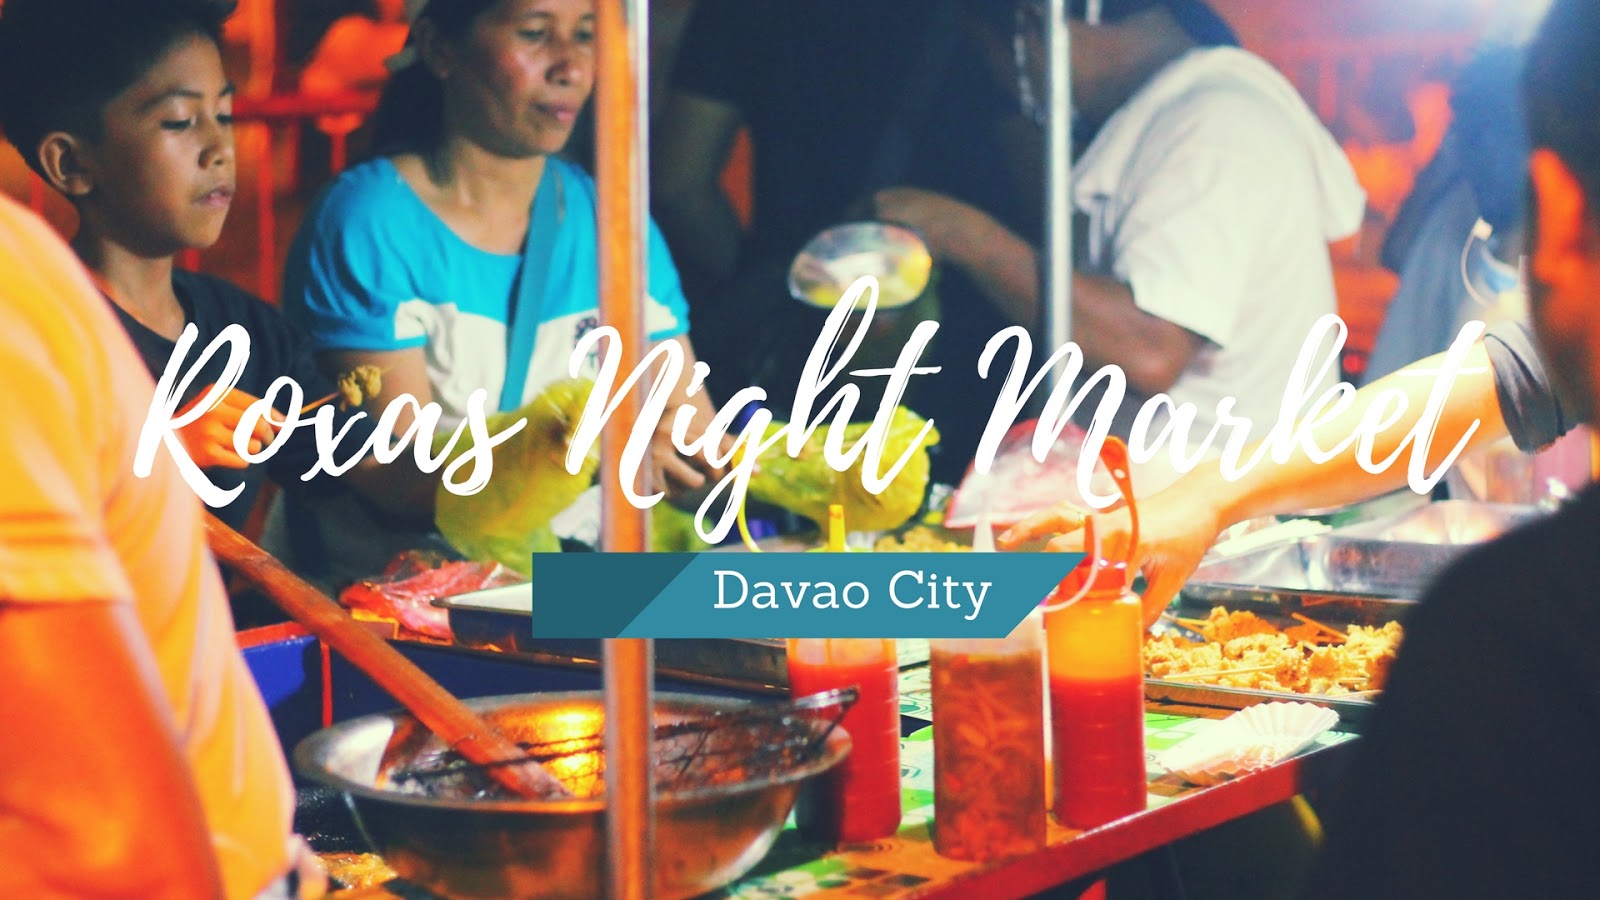 Roxas Night Market Davao City